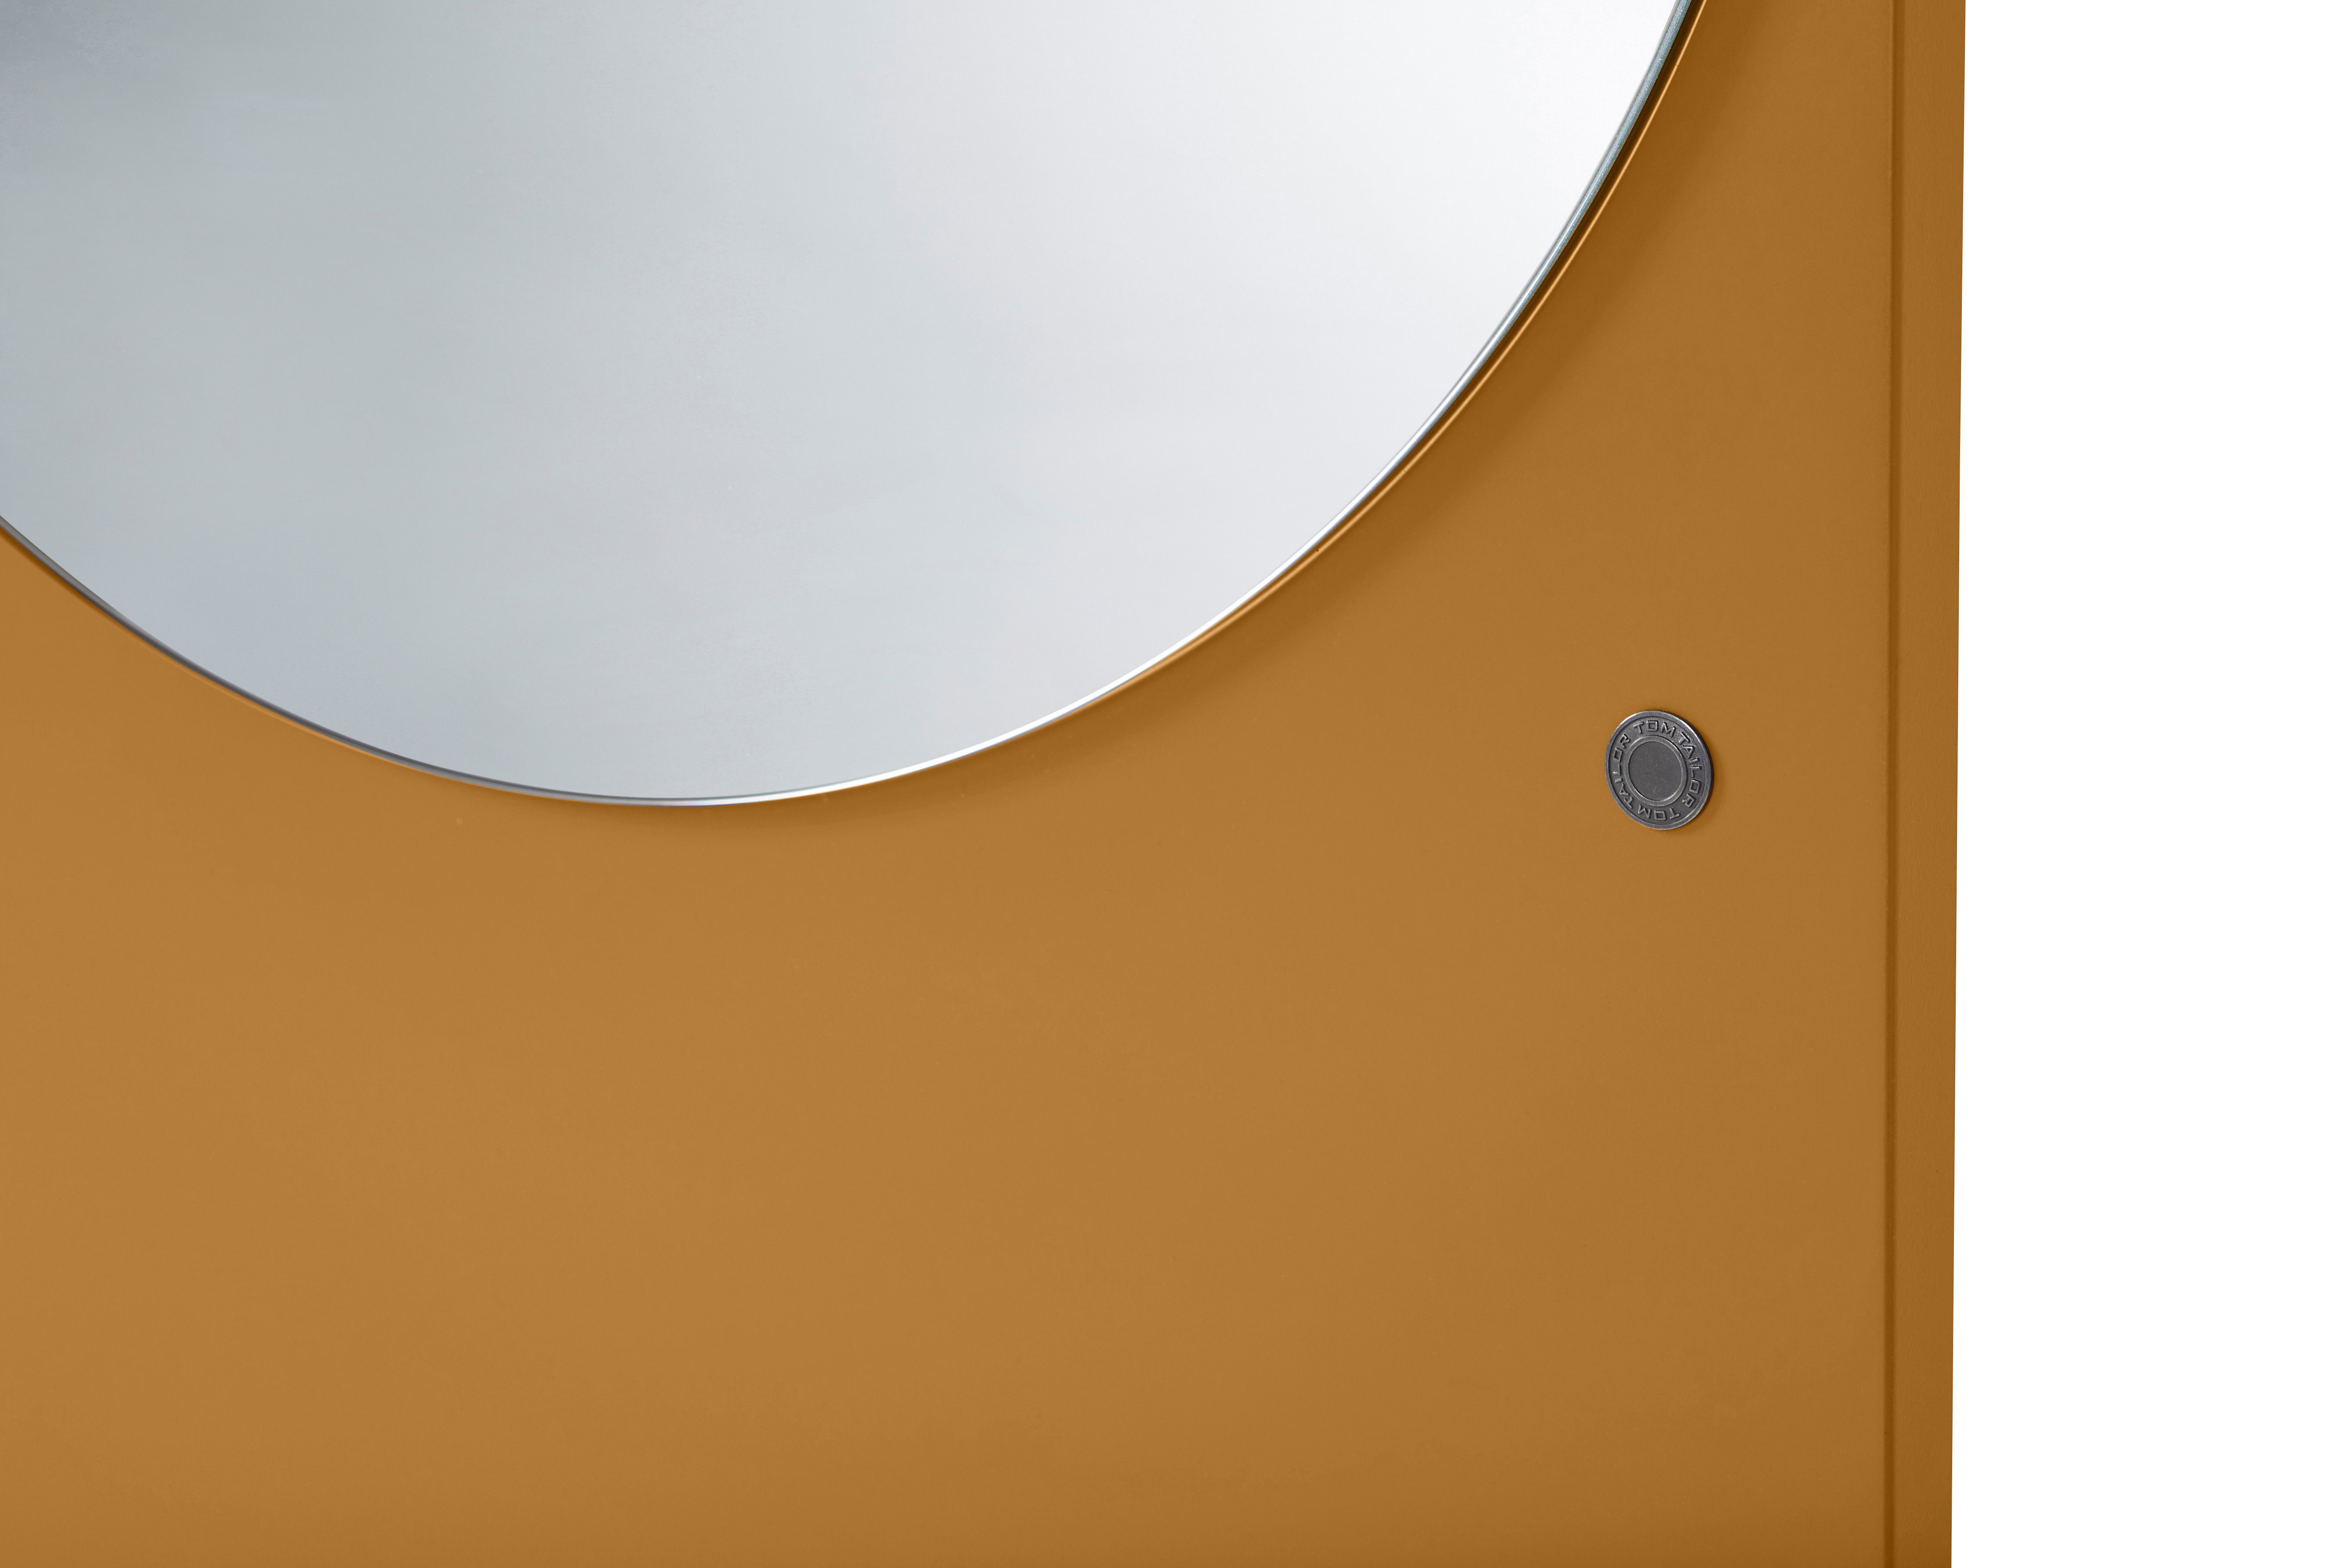 - Spiegel vielen schönen TAILOR Standspiegel hochwertig farbiges Highlight - lackiert, COLOR in Form HOME Wandlehnender TOM & Farben MIRROR besonderer in mustard_029